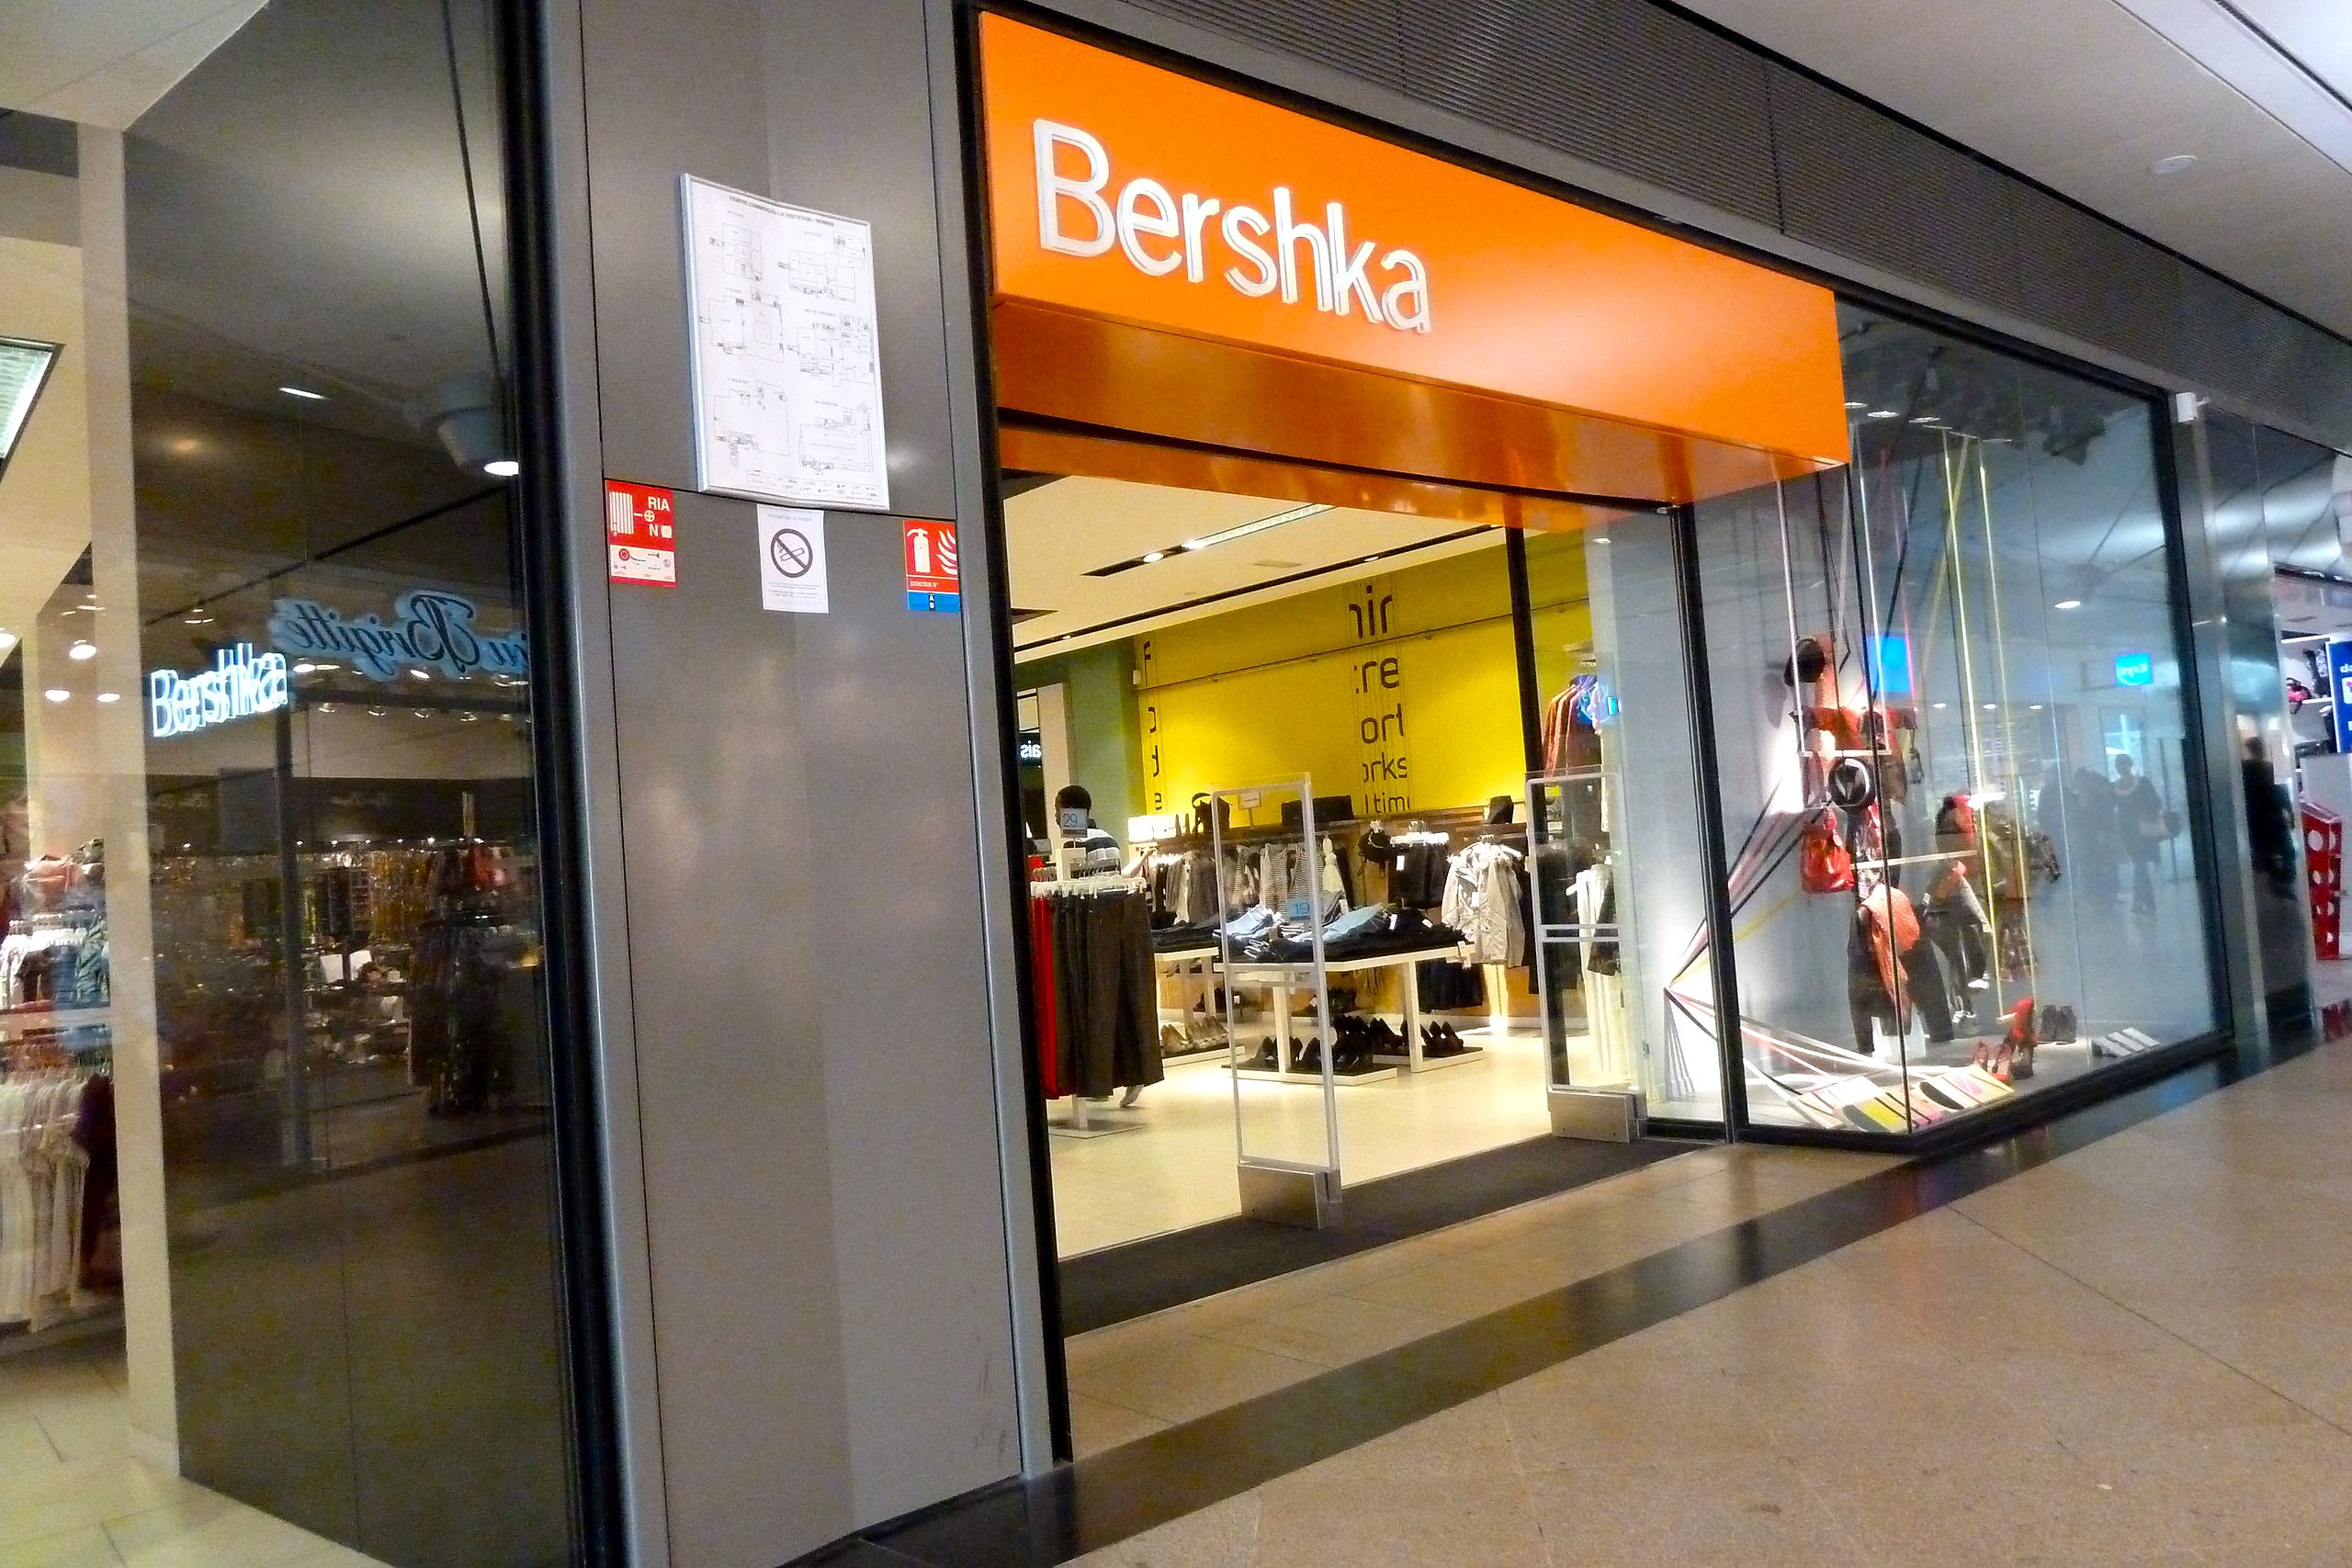 Invierte en tus accesorios: Bershka tiene en rebajas el bolso del verano por 10